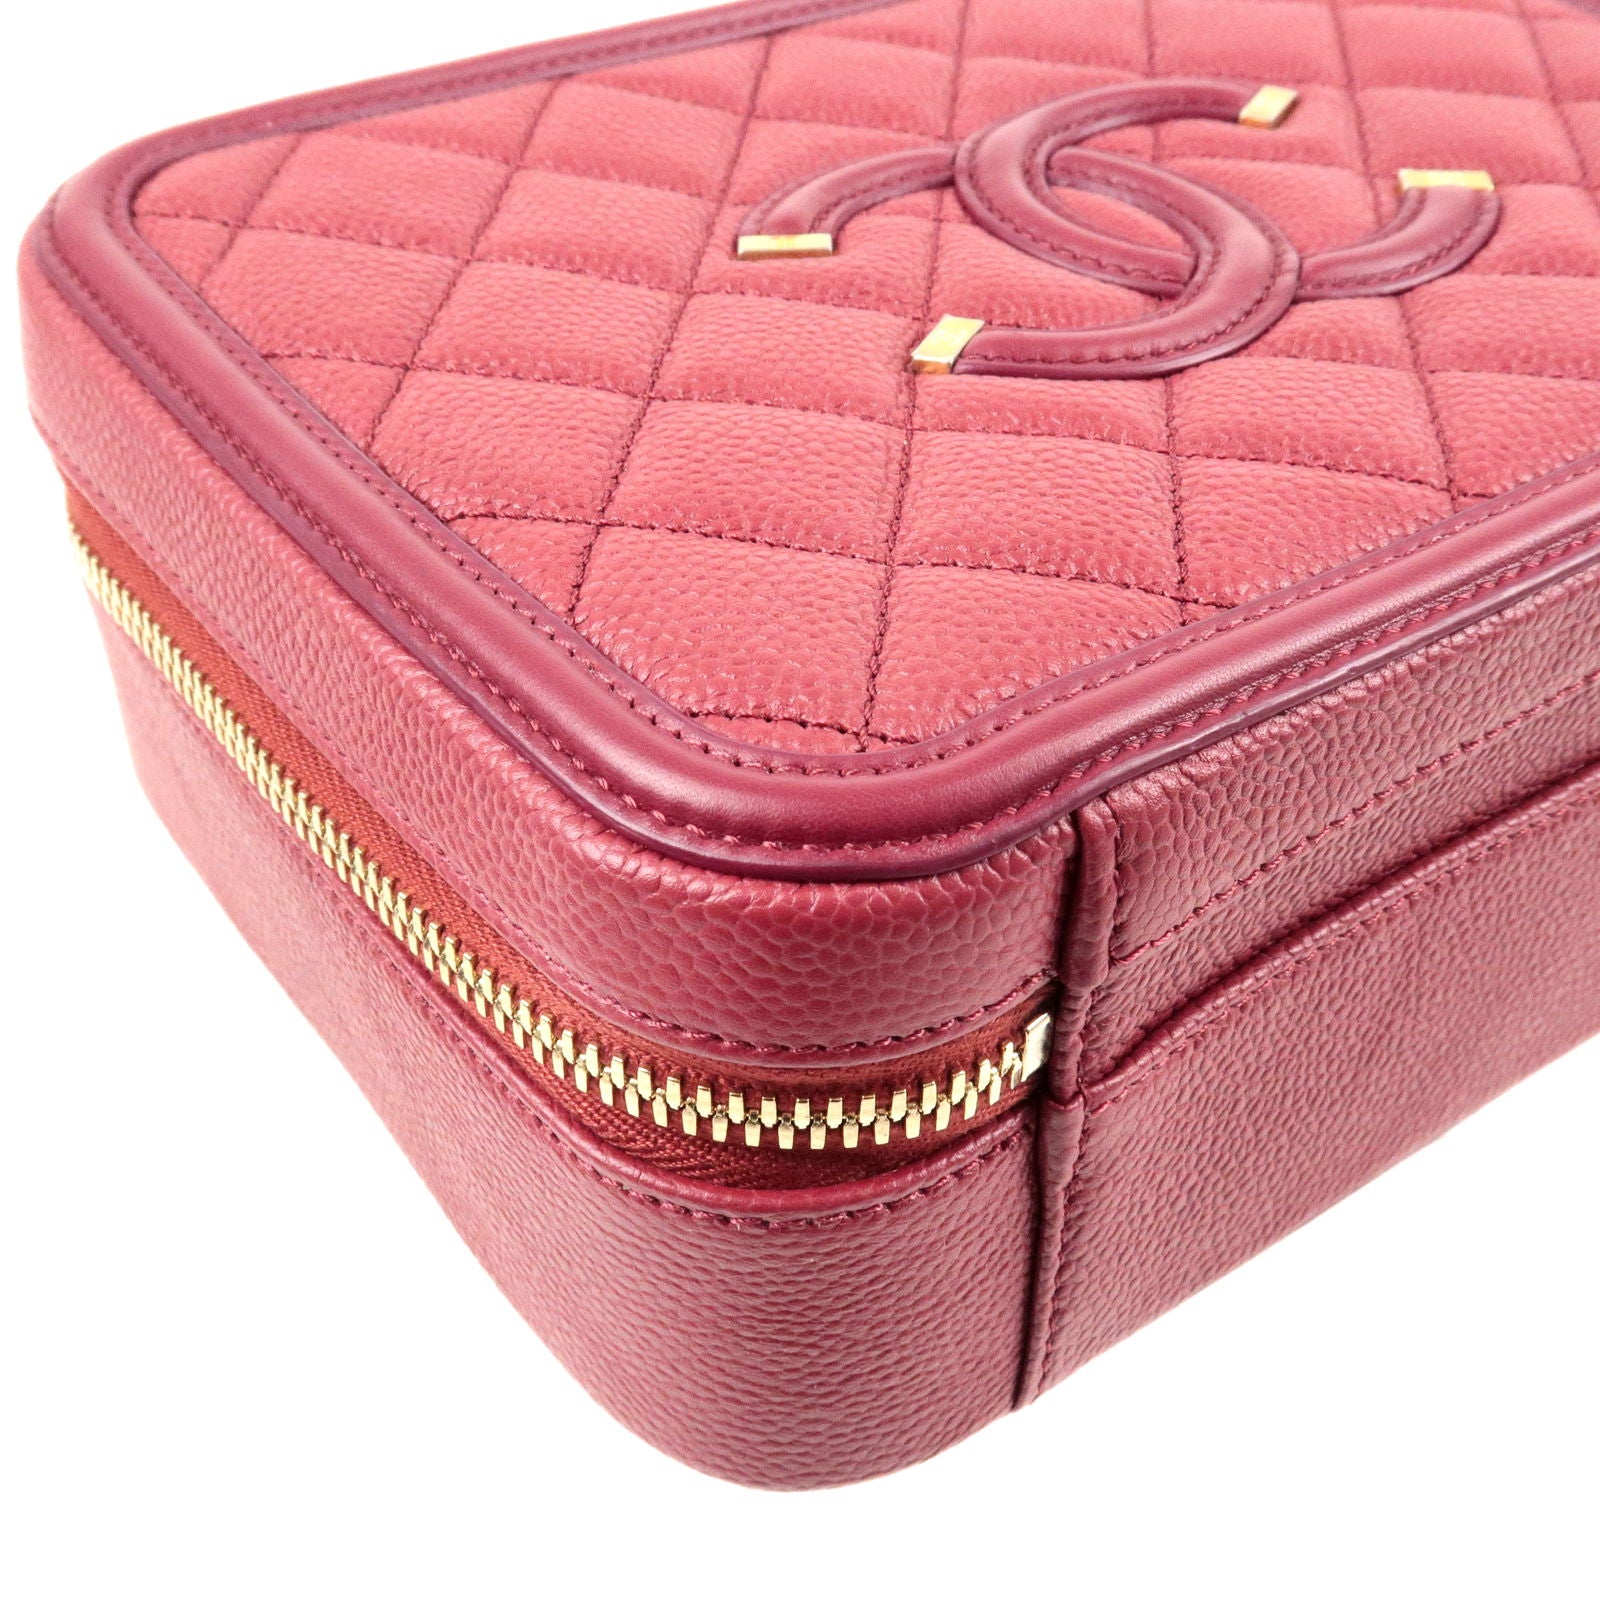 red chanel vanity case bag